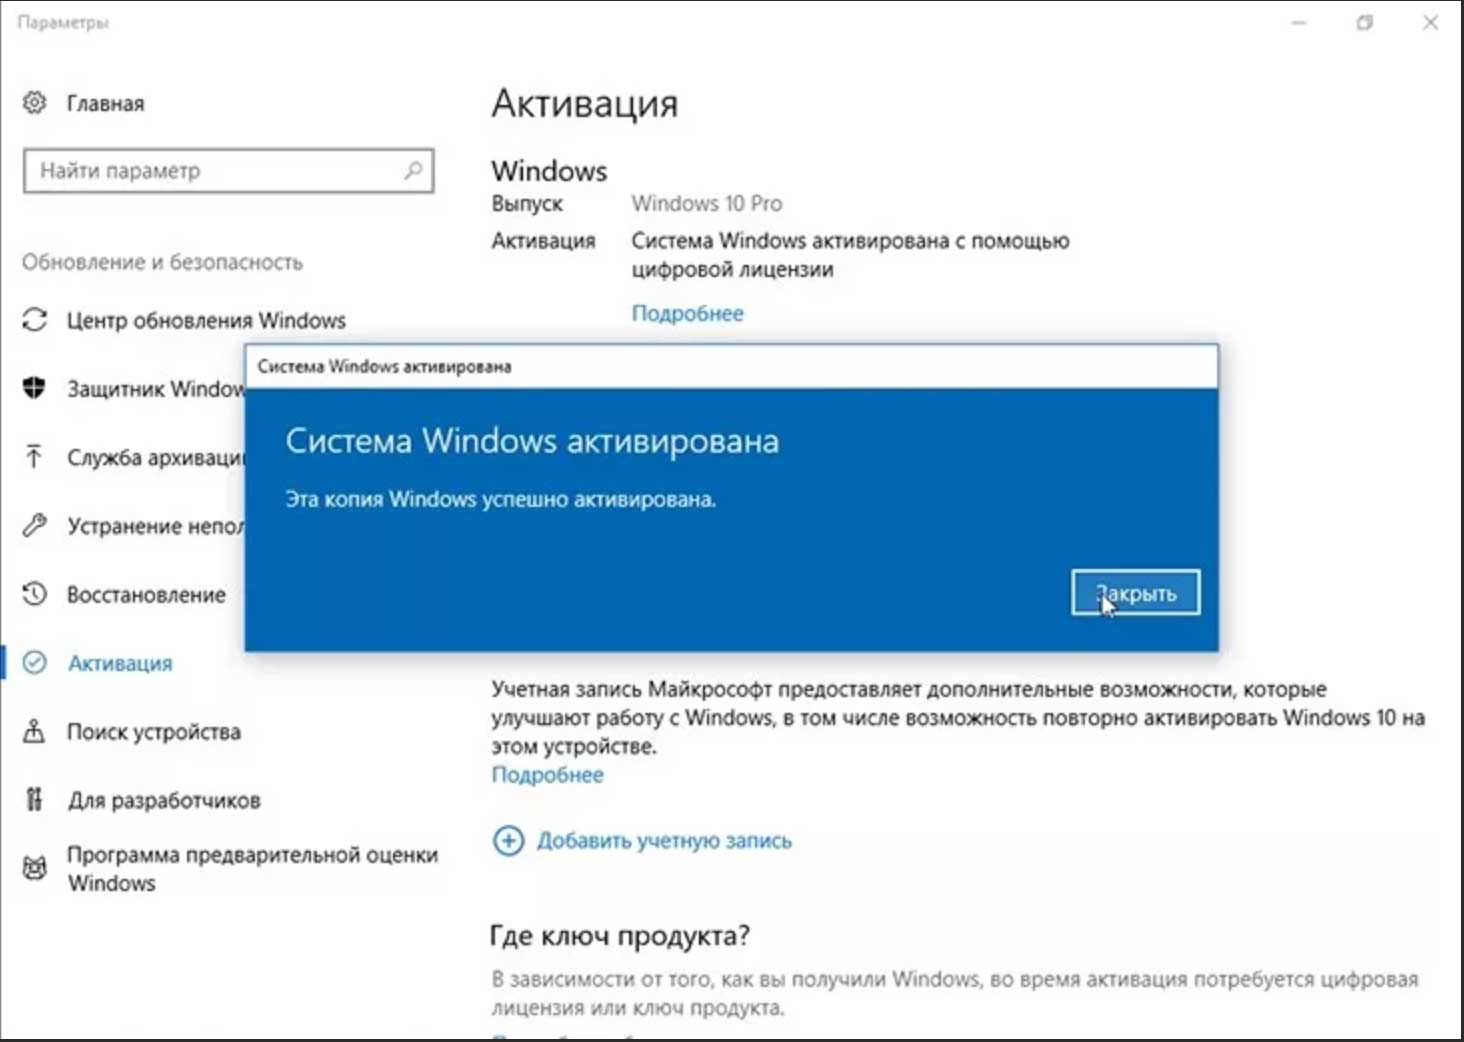 Enable windows 10. Активация Windows 10 операционной системы. Как активировать винду 10. Как активировать виндовс 10 на ноутбуке. Как октивируватьвиндус10.